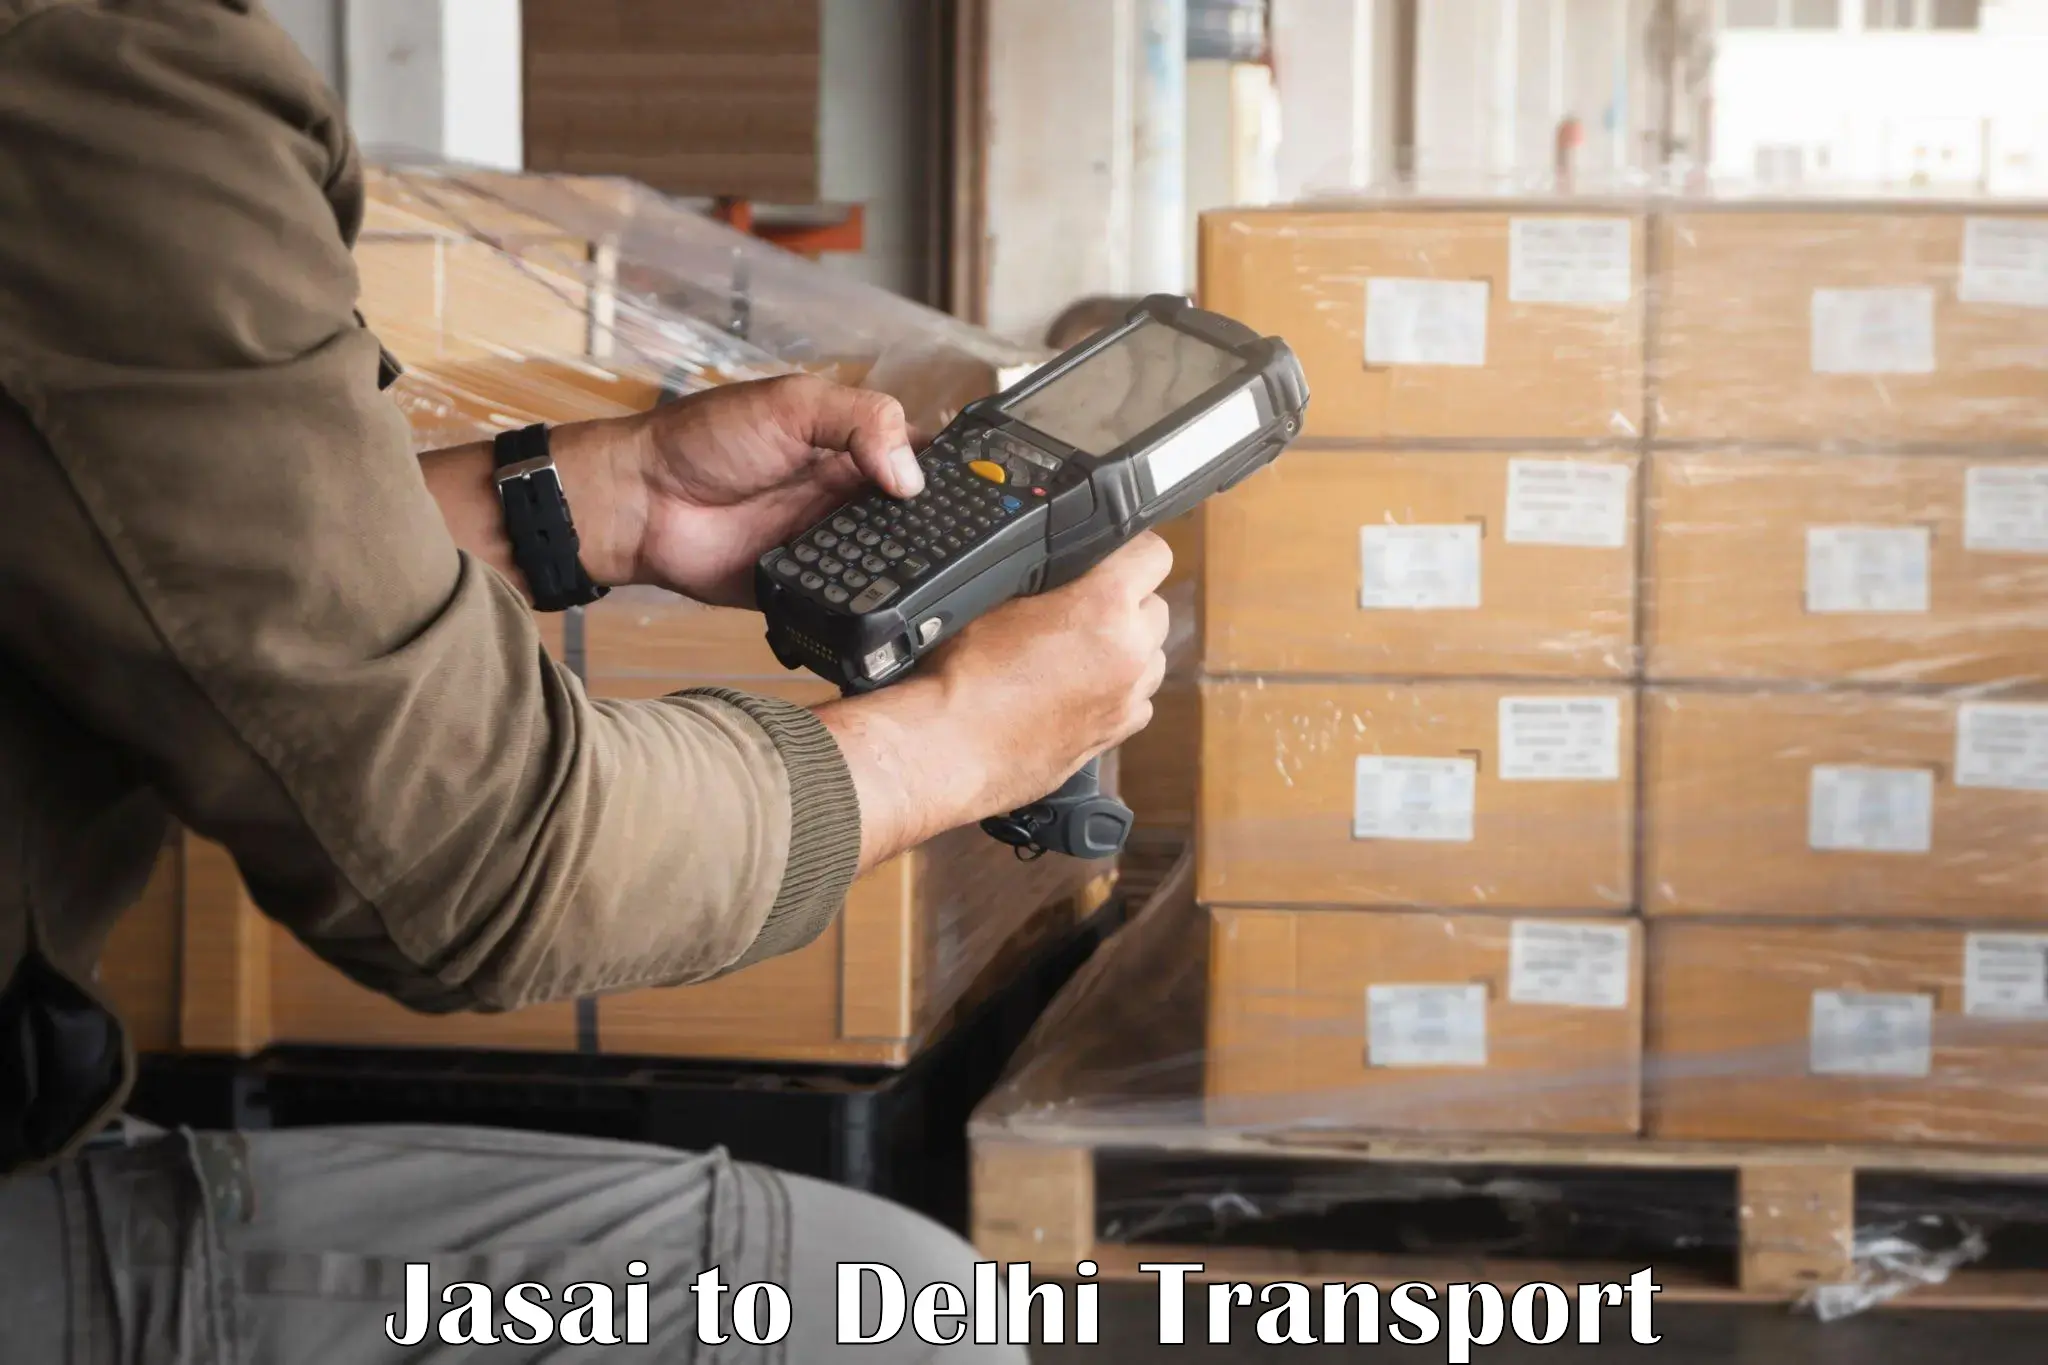 Delivery service Jasai to Delhi